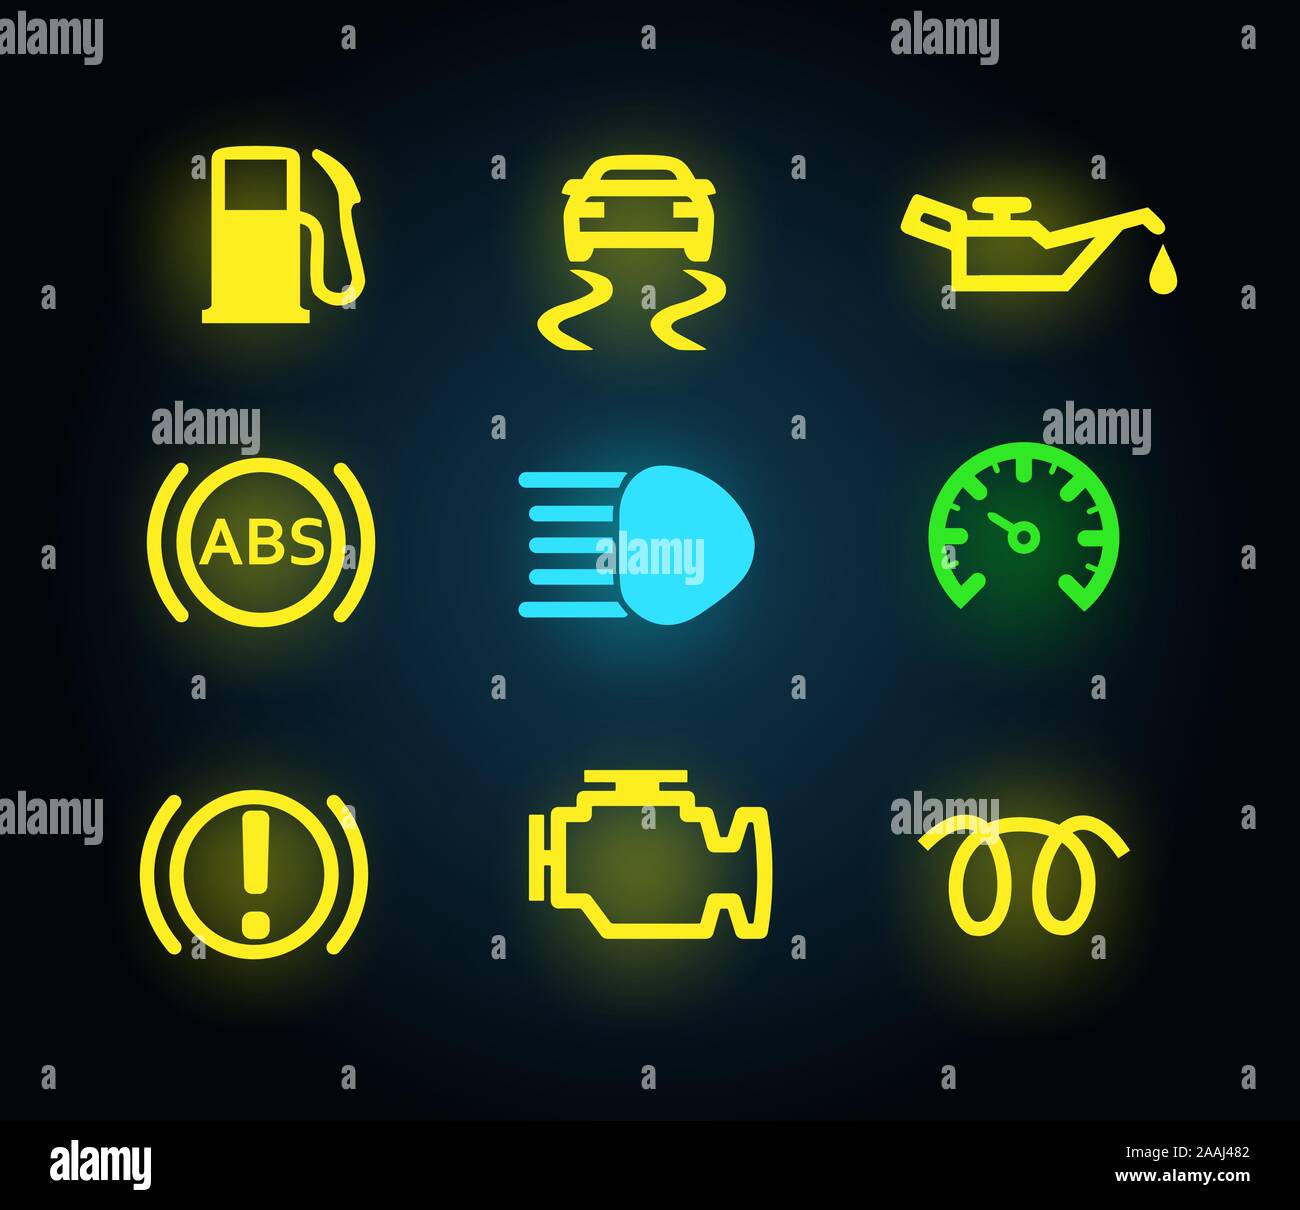 Jeu de lumière jaune et vert du tableau de bord de voiture, icônes indicateurs isolés, essence, huile, moteur, ABS, frein de stationnement, vector illustration Illustration de Vecteur